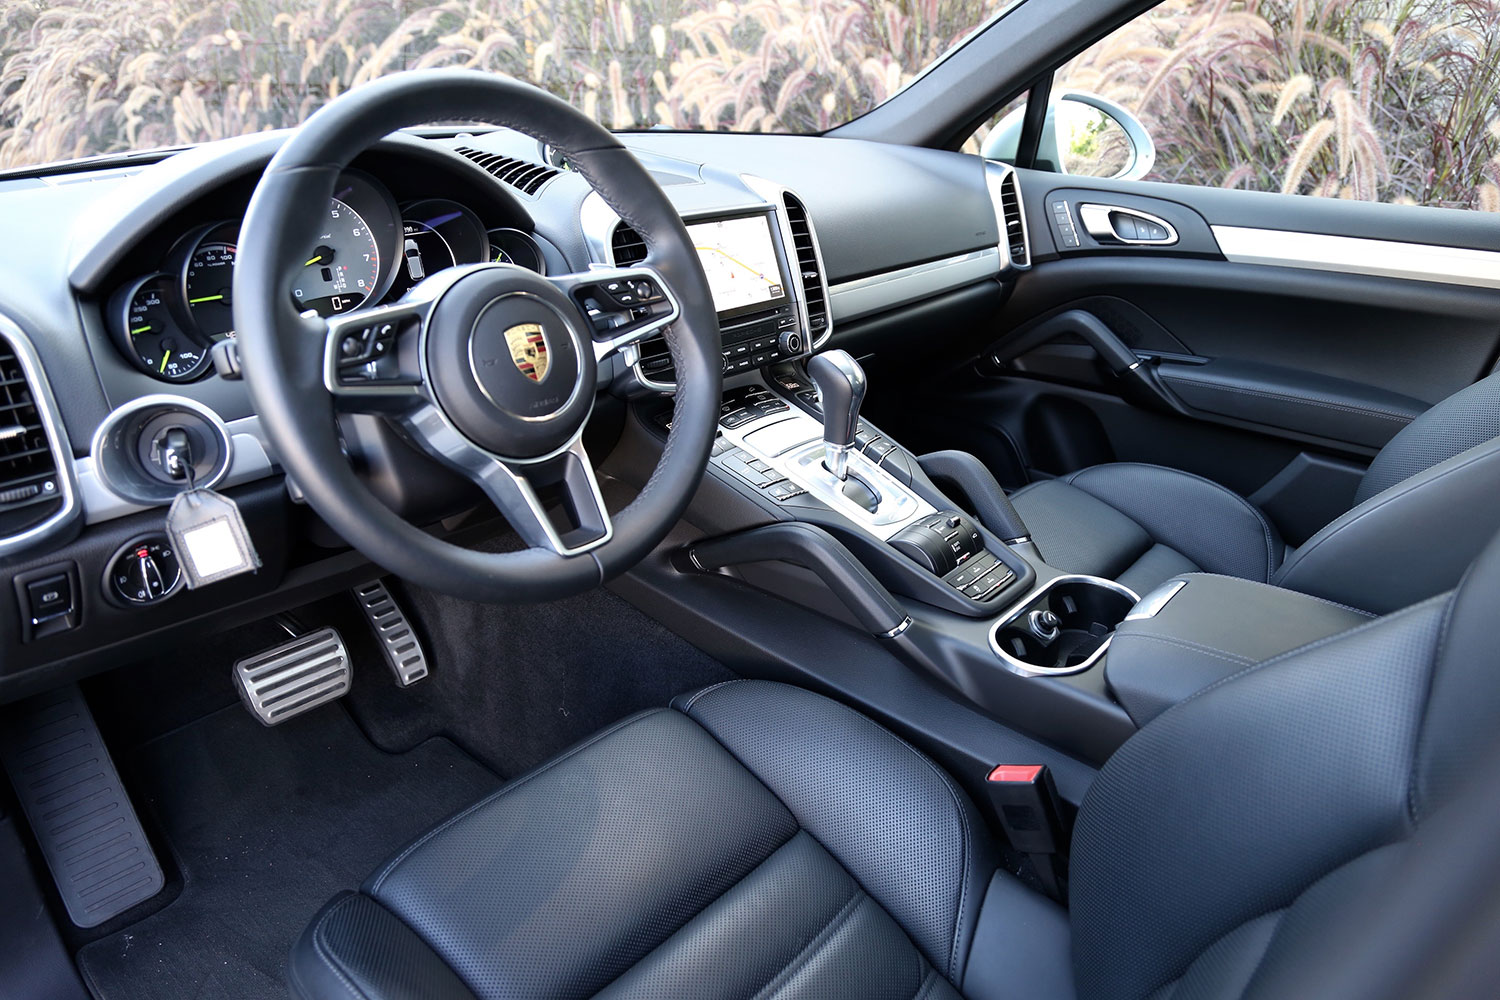 Porsche Cayenne Interior Review